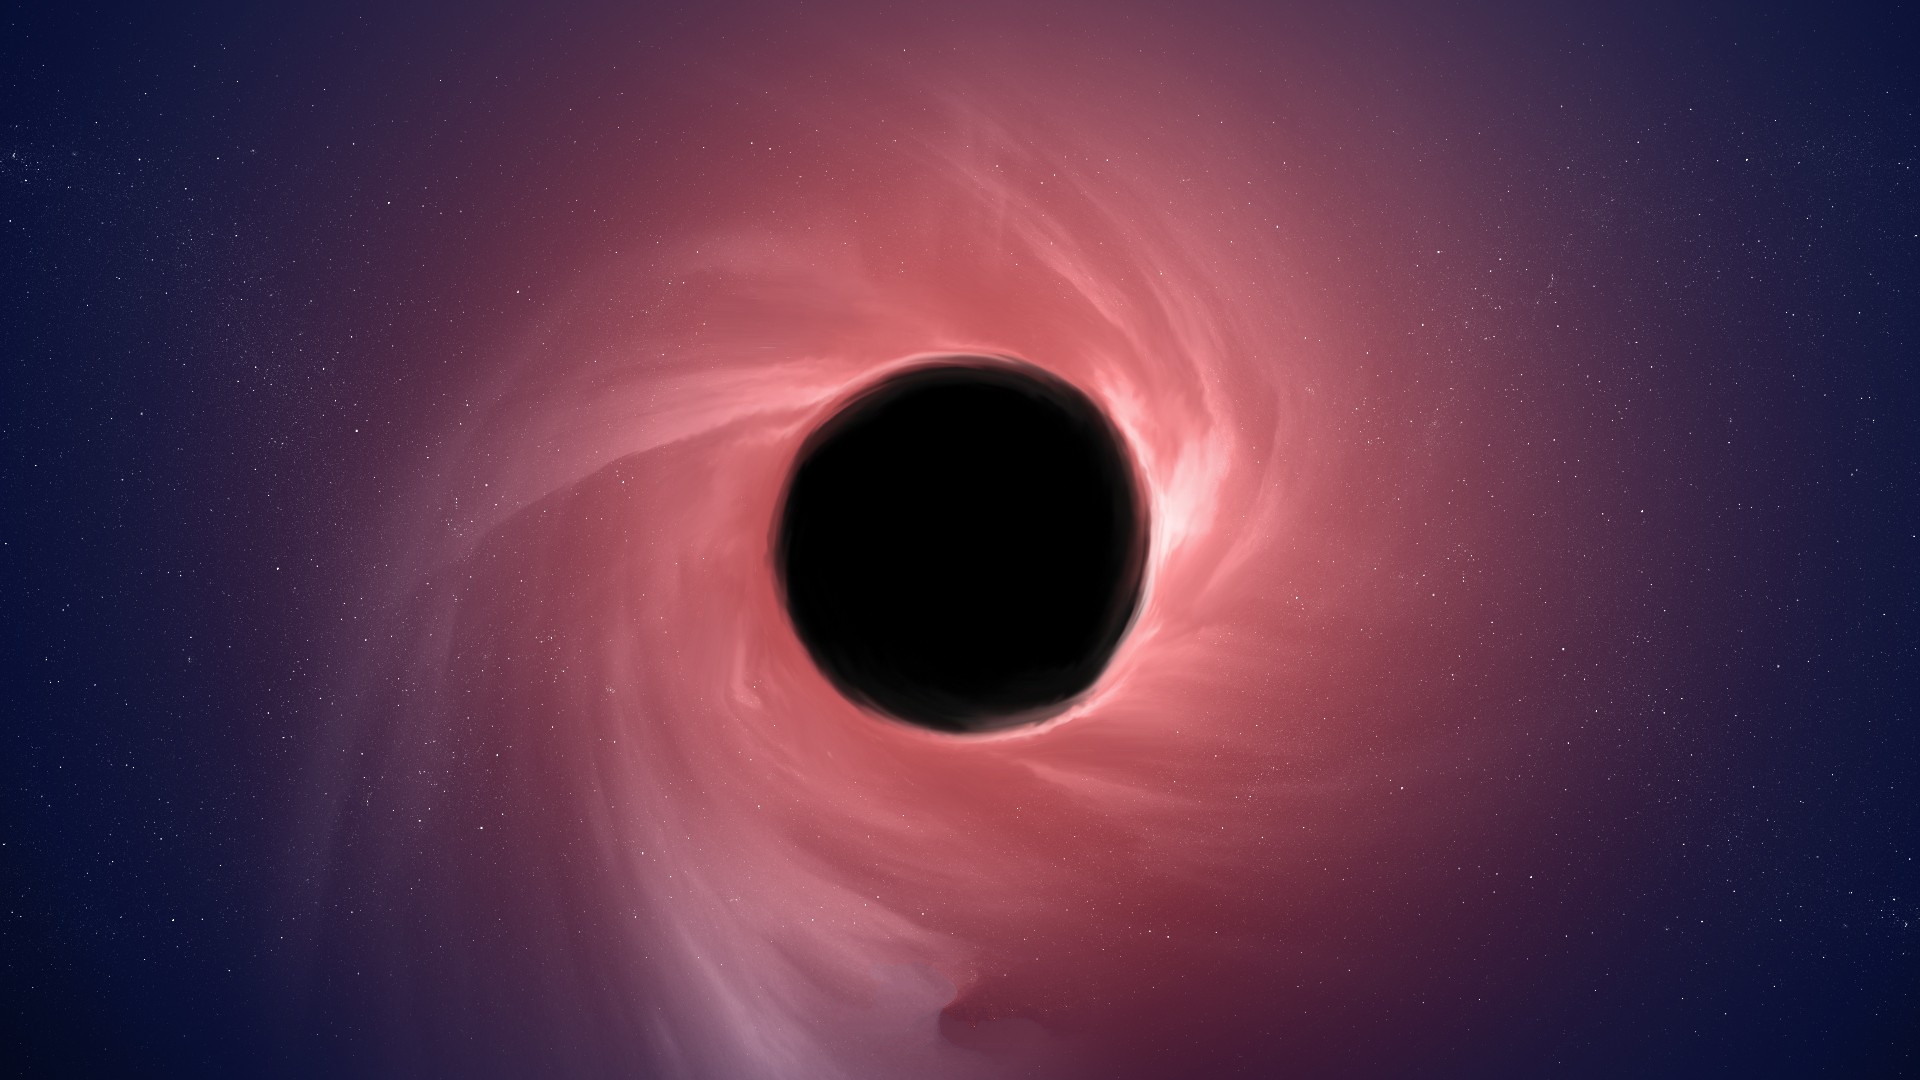 Hình nền hố đen là một trong những cách tuyệt vời để trang trí những thiết bị điện tử của bạn. Với những màu sắc và hoạt hình độc đáo, hình nền hố đen sẽ đưa bạn vào vũ trụ đầy bí ẩn, giúp bạn thư giãn và tận hưởng sự độc đáo của vũ trụ.